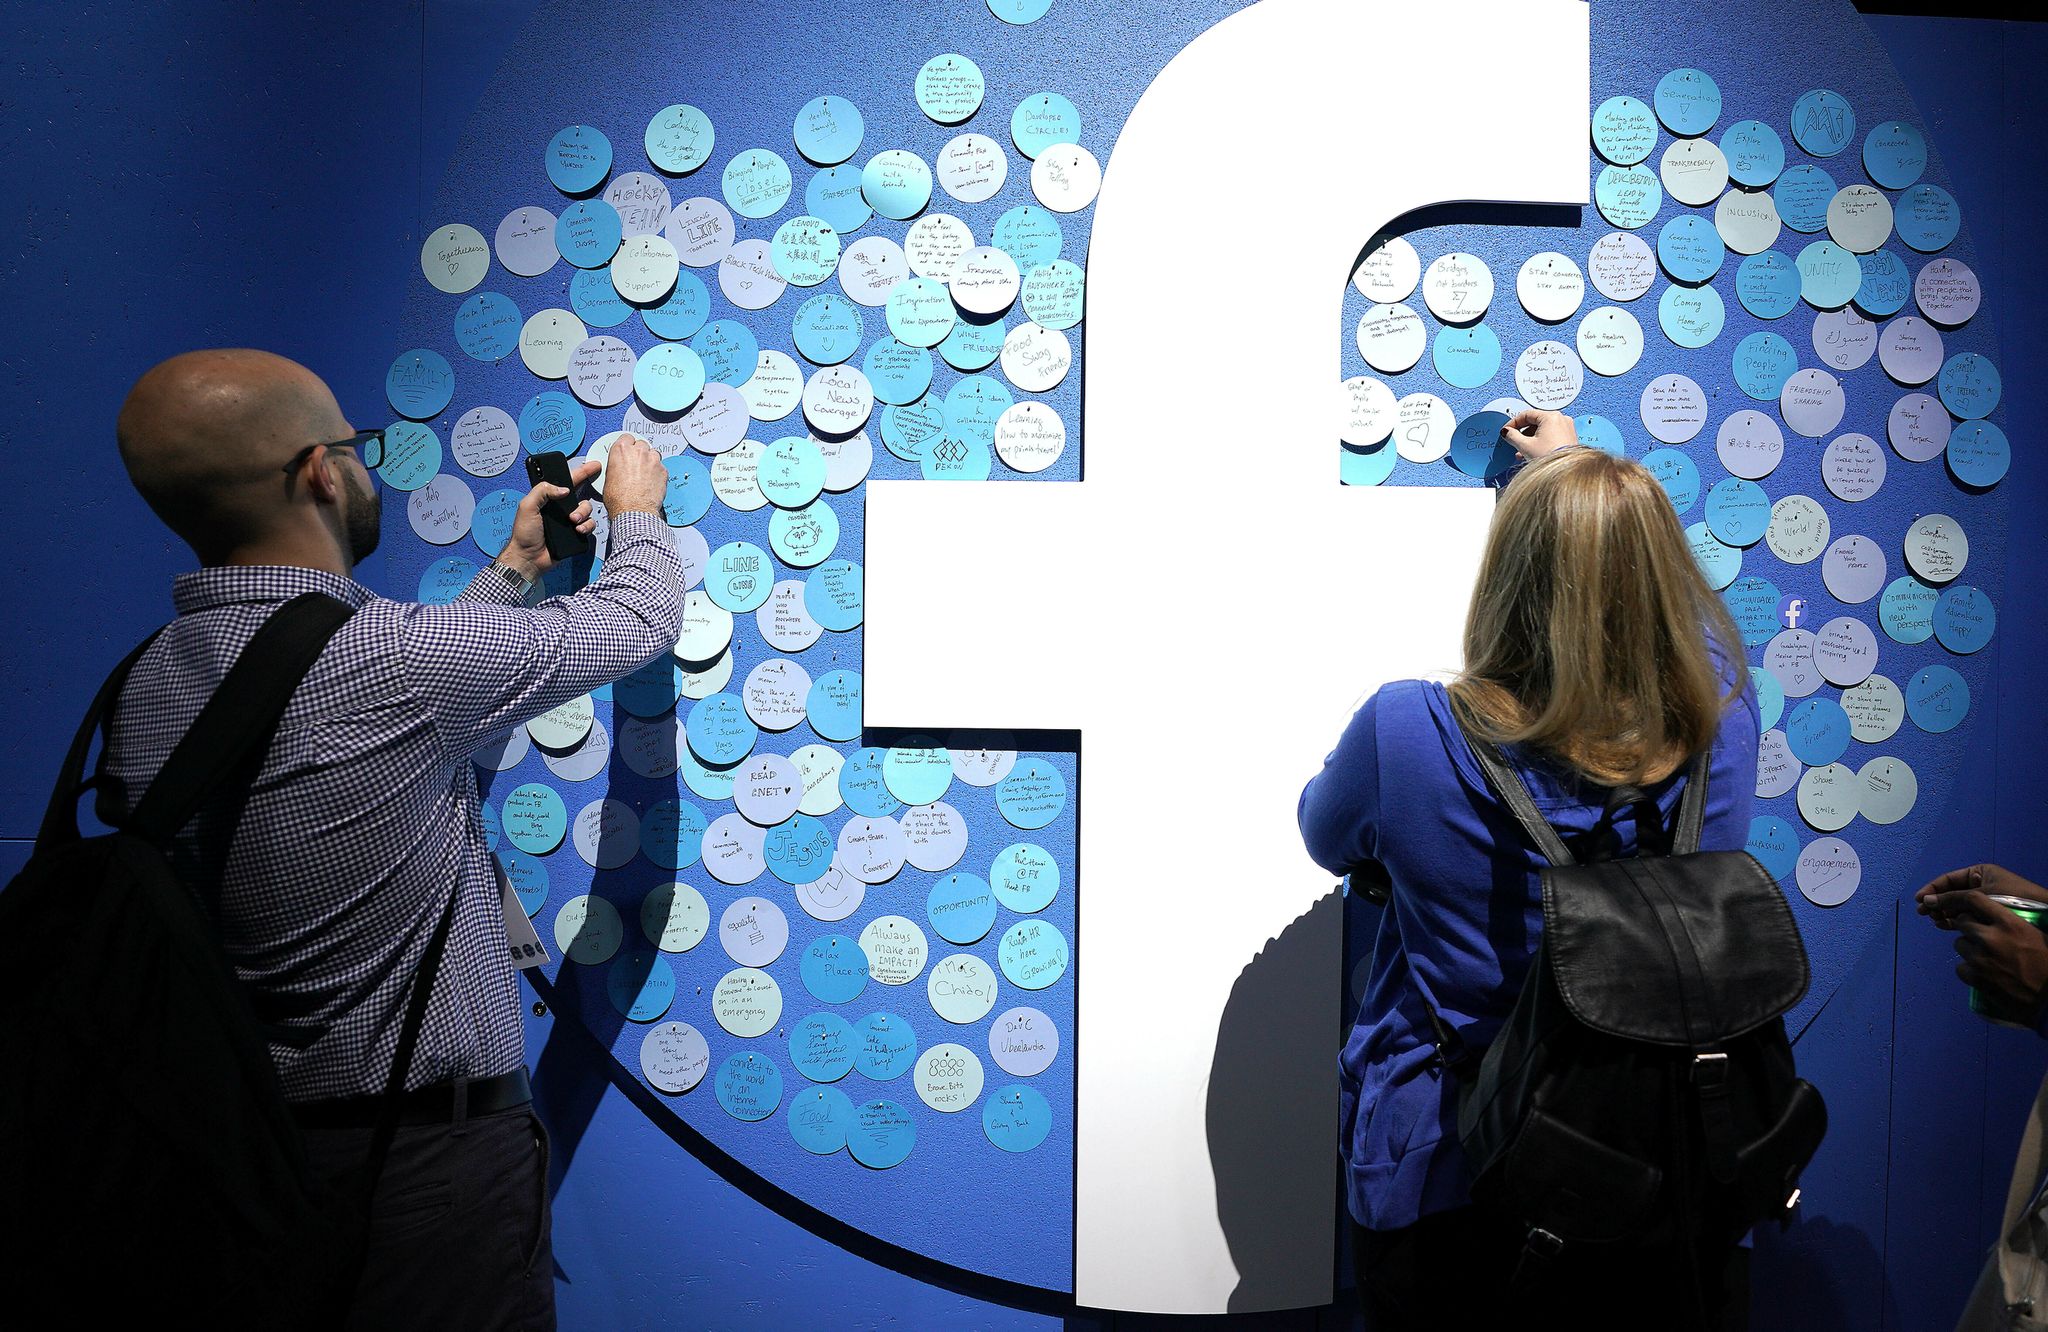 فيسبوك: تخلصنا من ثلاثة مليارات حساب مزيف